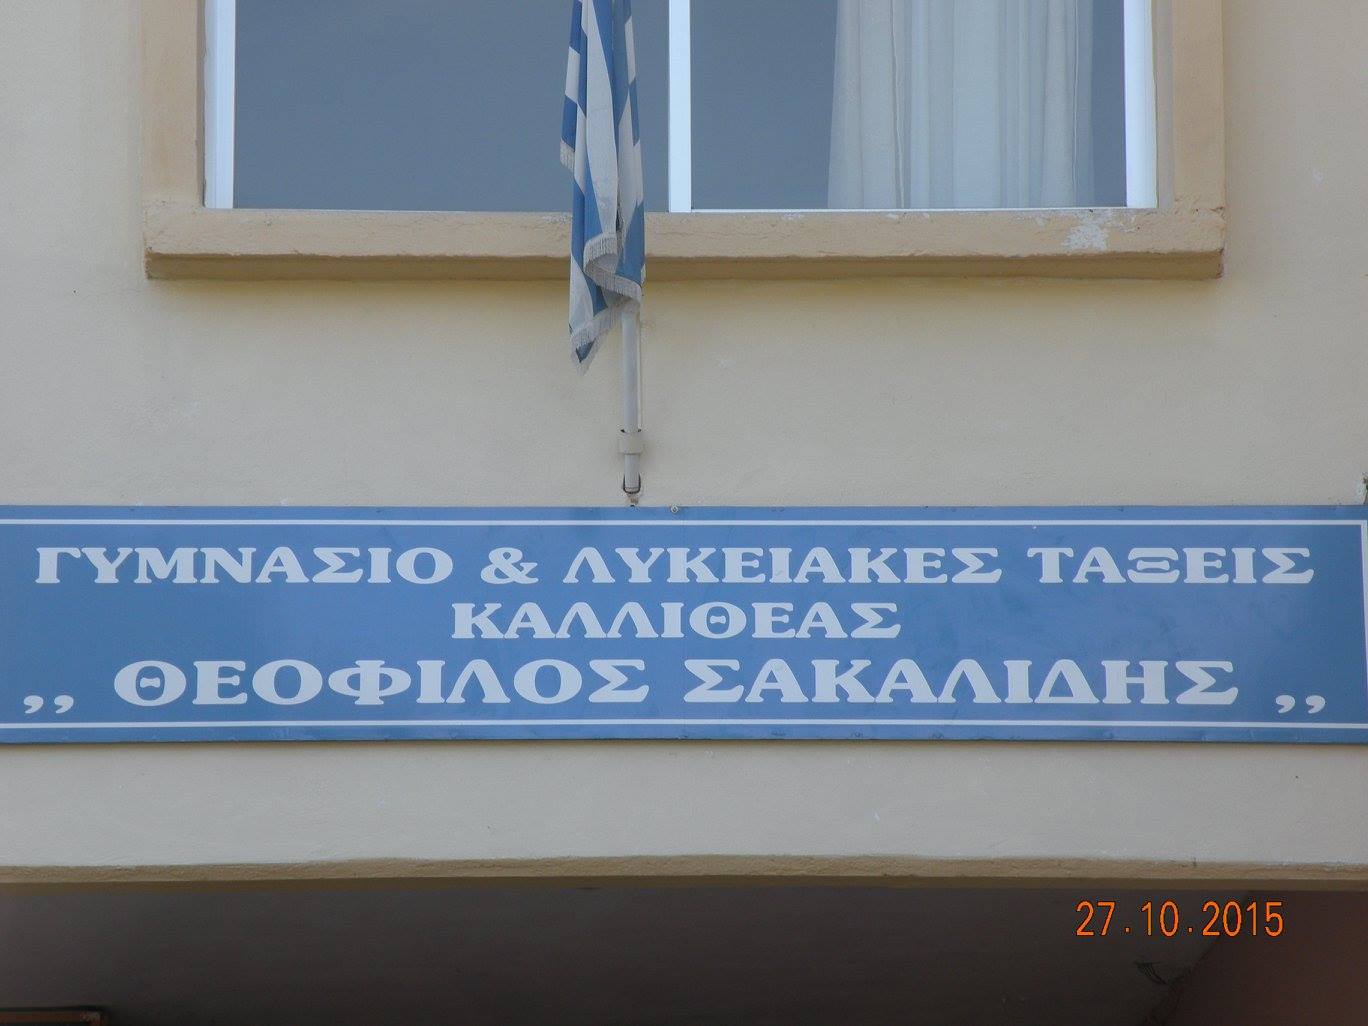 Σε Γυμνάσιο “Θεόφιλος Σακαλίδης” μετονομάστηκε το Γυμνάσιο Καλλιθέας (FB)